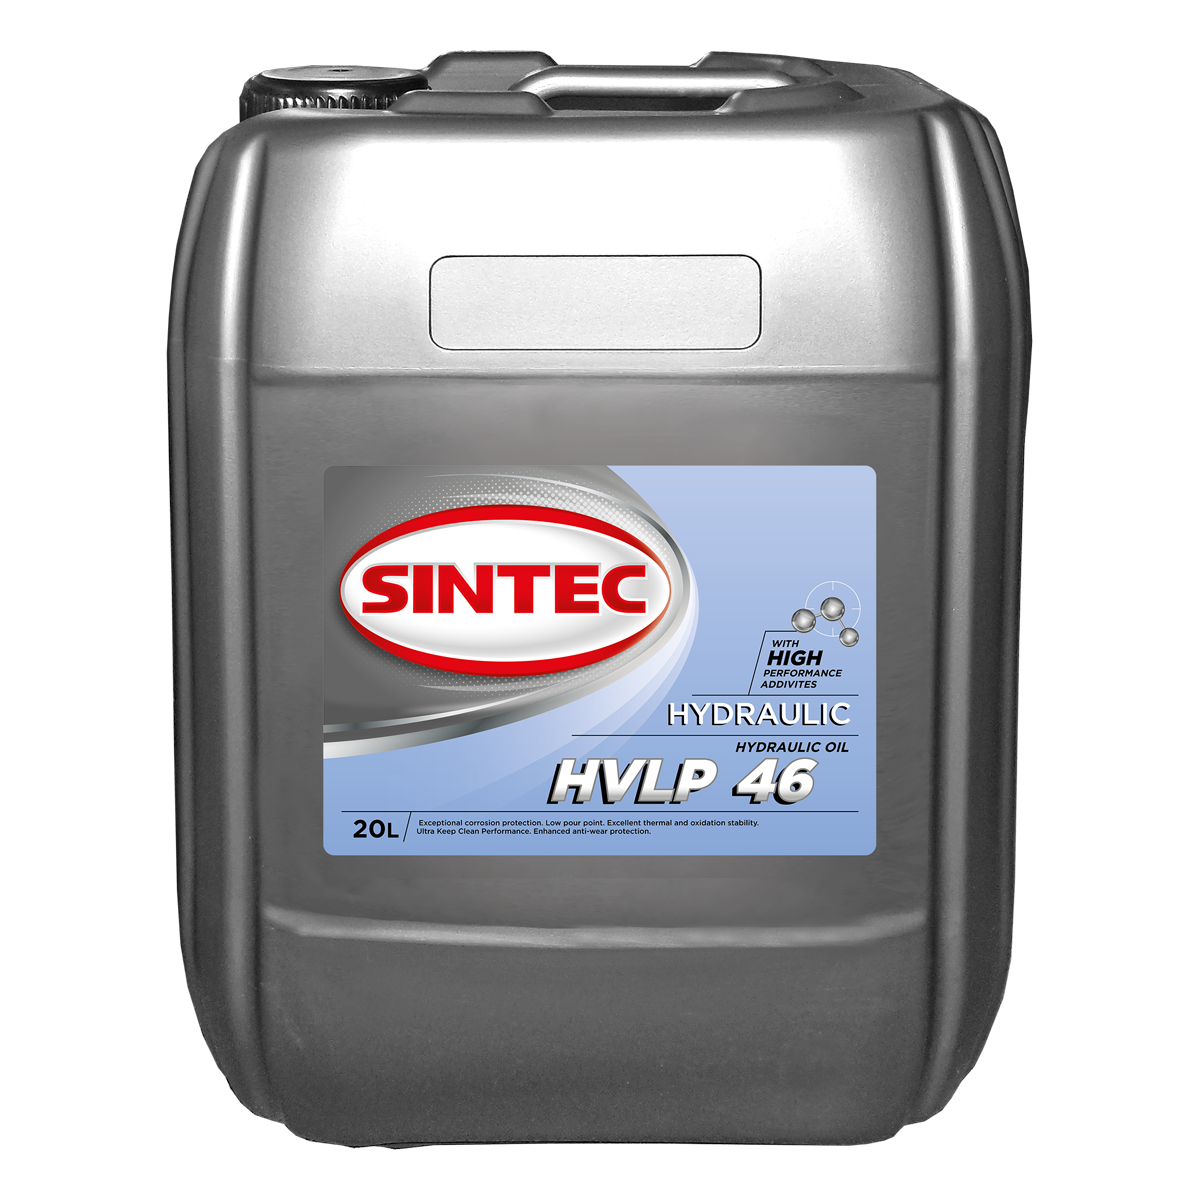 Sintec Hydraulic HVLP 46 Гидравлические масла: описание, применение, свойства, где
							купить